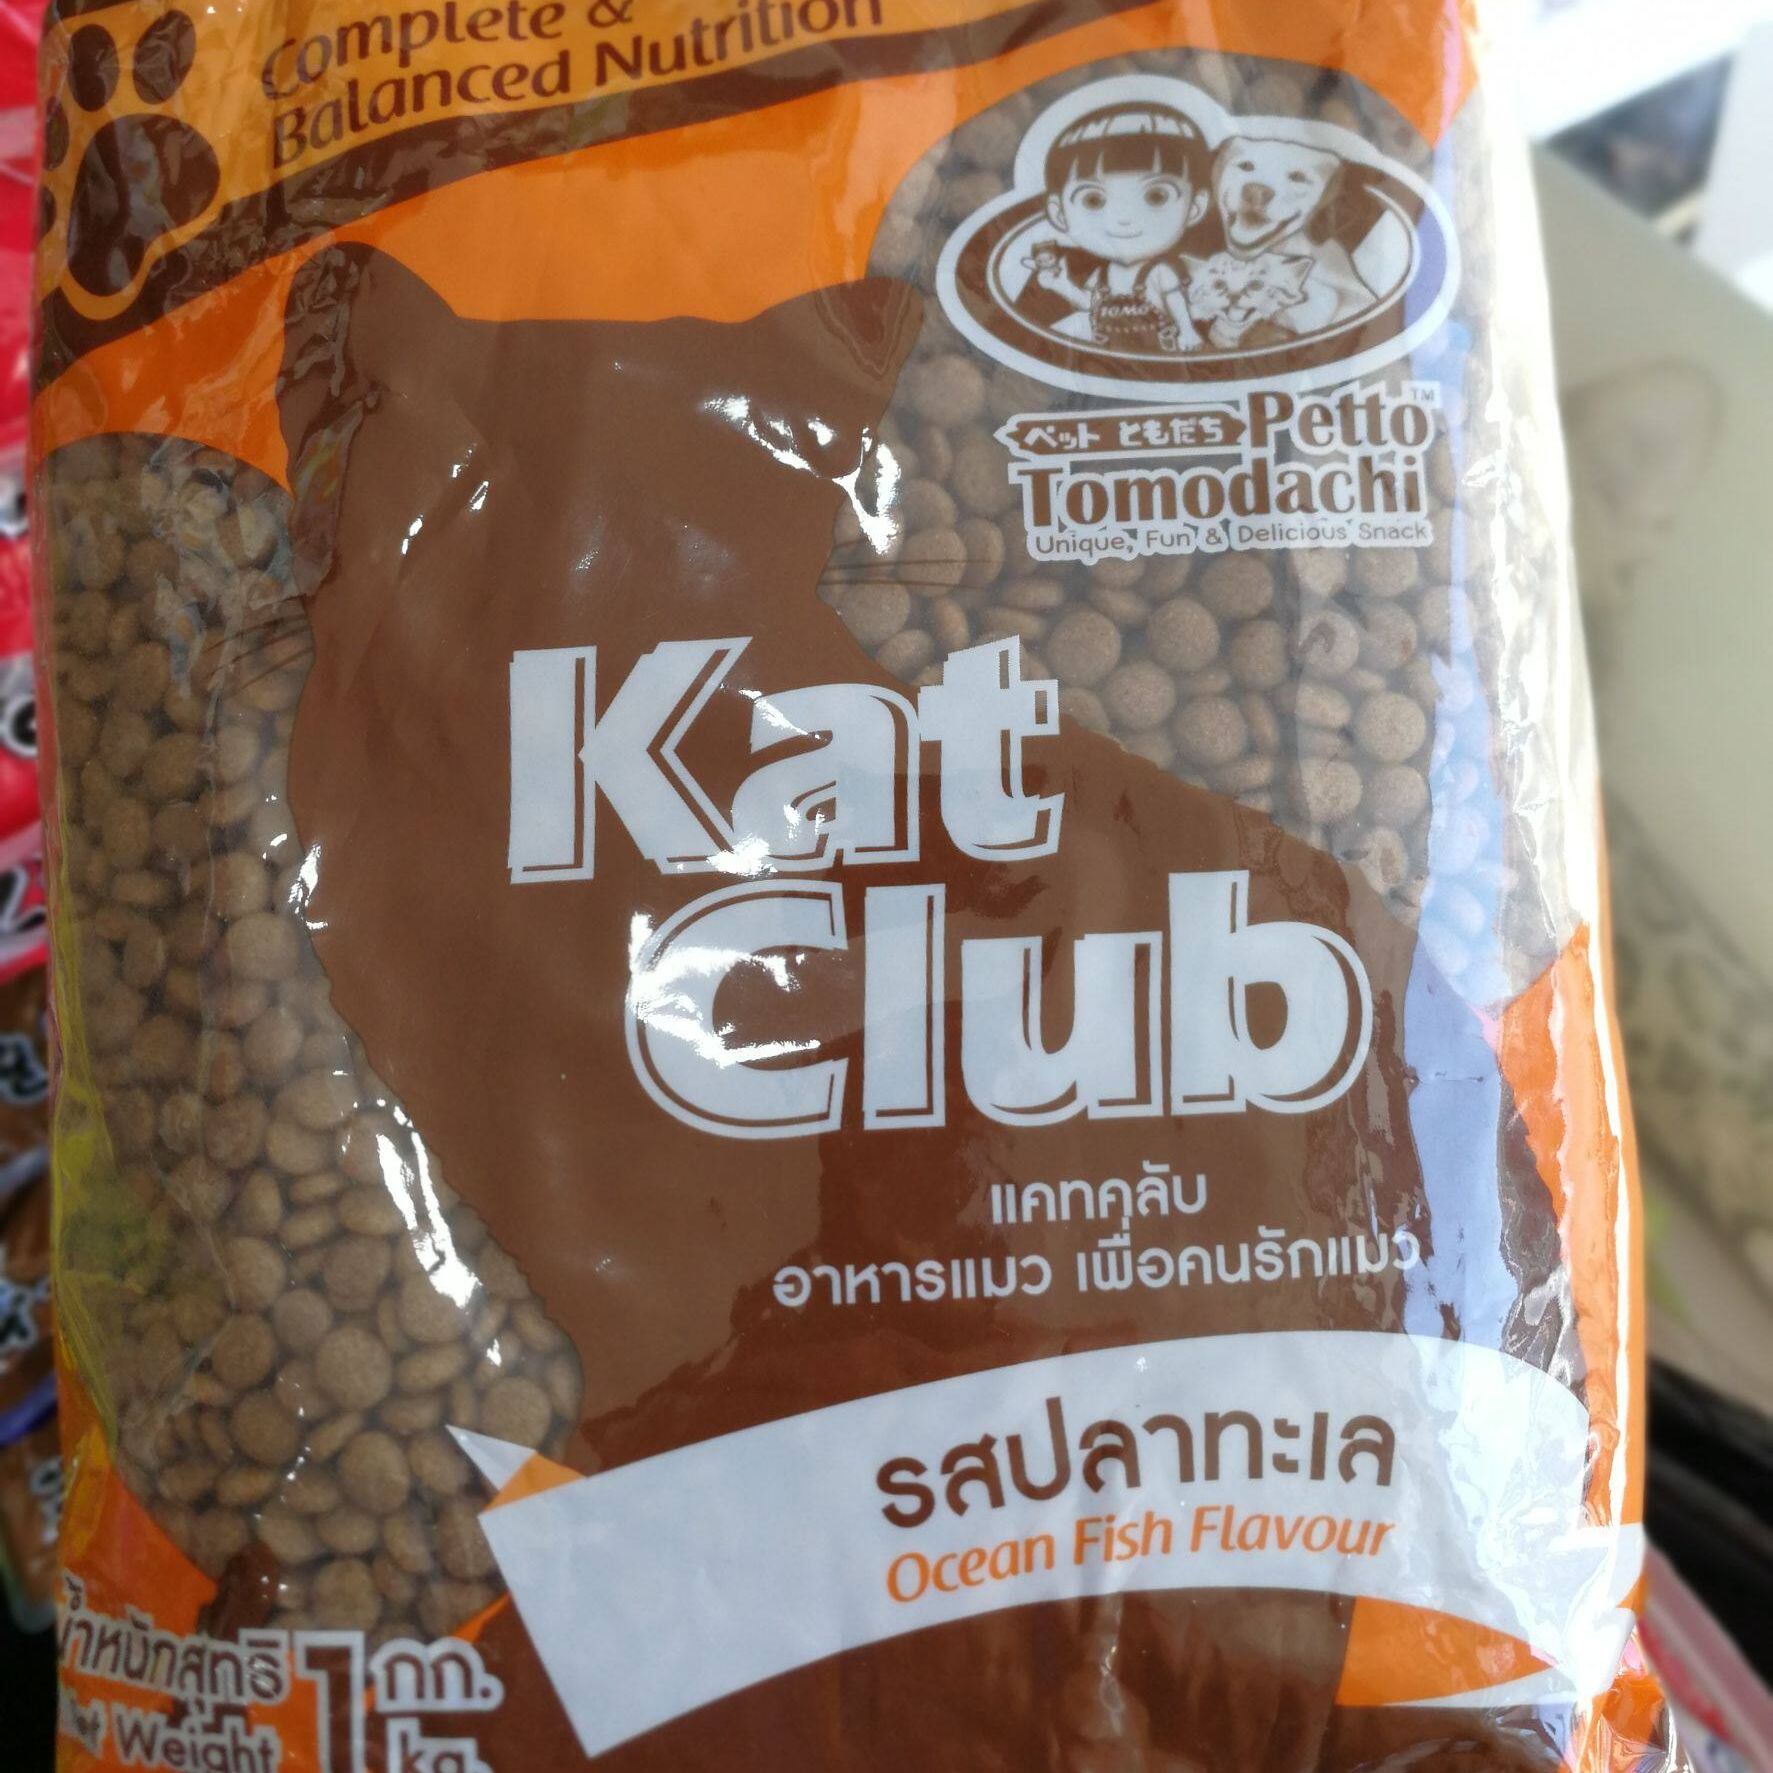 Kat Club แคทคลับ รสปลาทะเล 1 กก.อาหารแมว สำหรับแมวโต 1 ปีขึ้น เม็ดขนาดเล็ก สีน้ำตาล เคี้ยวง่าย เหมาะกับแมวโตทุกสายพันธุ์​ เพื่อคนรักแมว